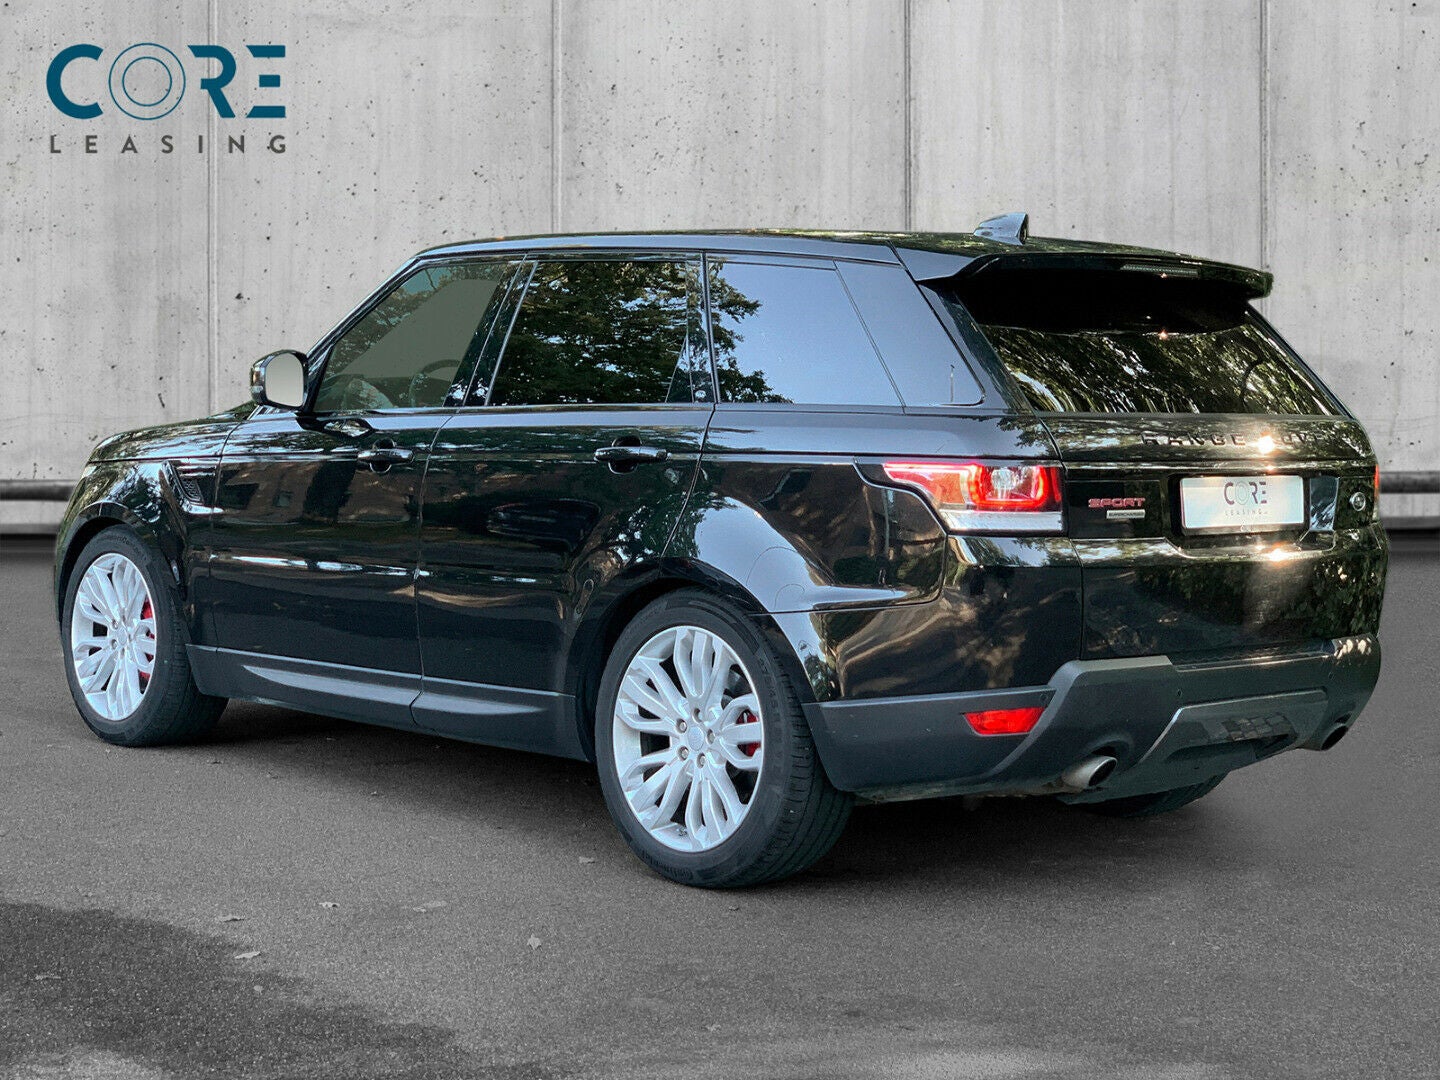 Sortmetal Land Rover Range Rover Sport SCV8 HSE Dynamic aut. fra 2017 parkeret foran en betonmur. CORE Leasing A/S er eksperter i Land Rover leasing.